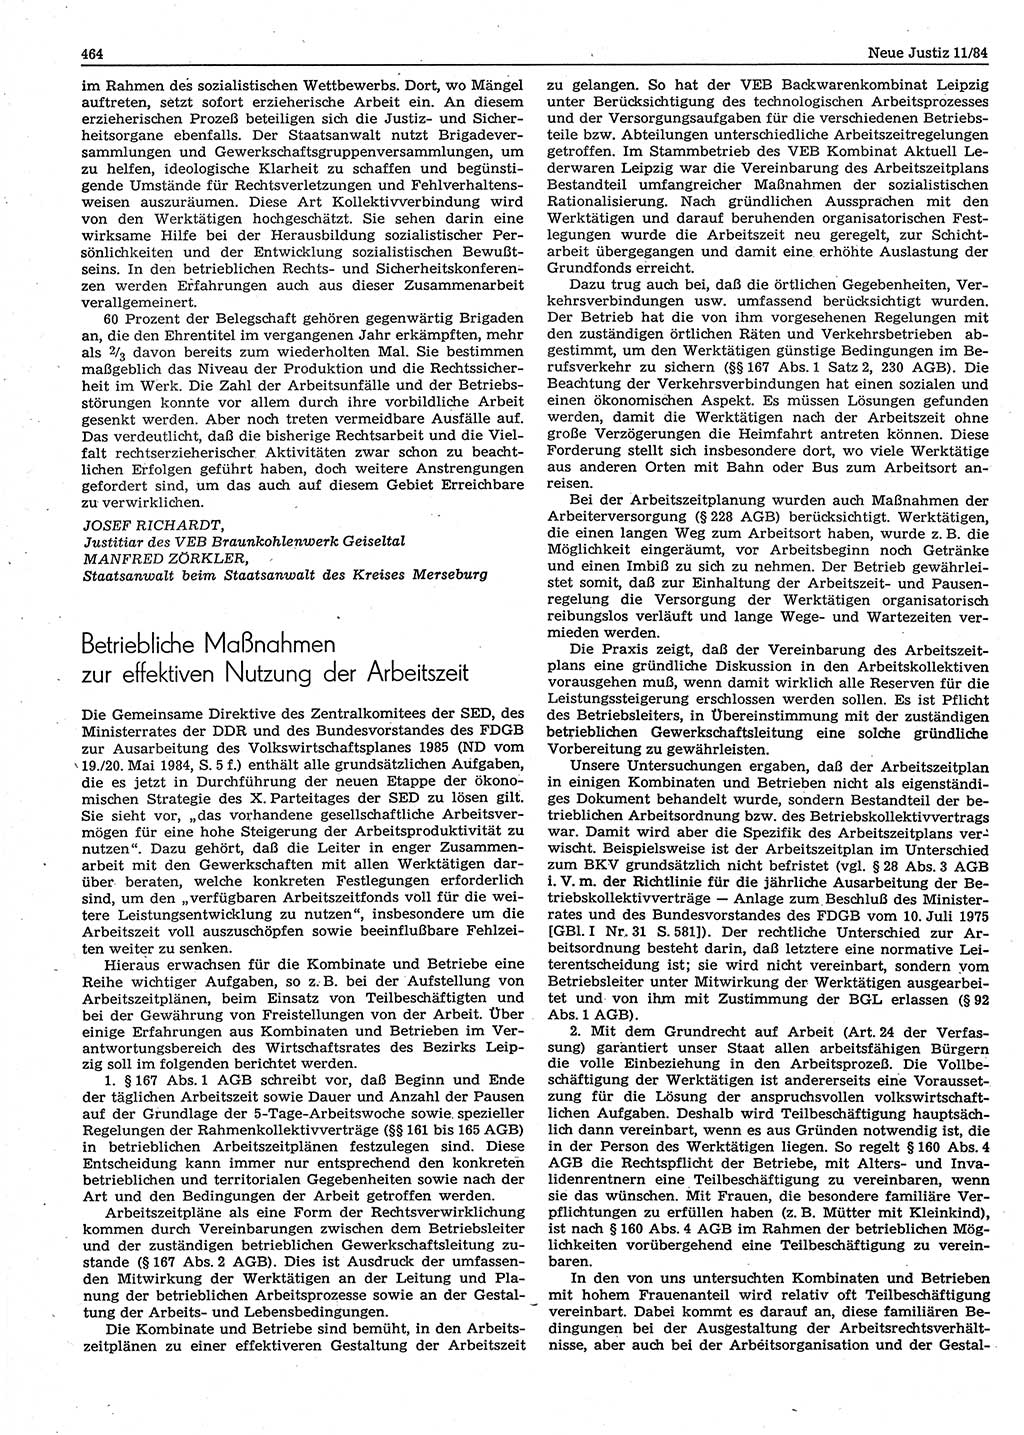 Neue Justiz (NJ), Zeitschrift für sozialistisches Recht und Gesetzlichkeit [Deutsche Demokratische Republik (DDR)], 38. Jahrgang 1984, Seite 464 (NJ DDR 1984, S. 464)